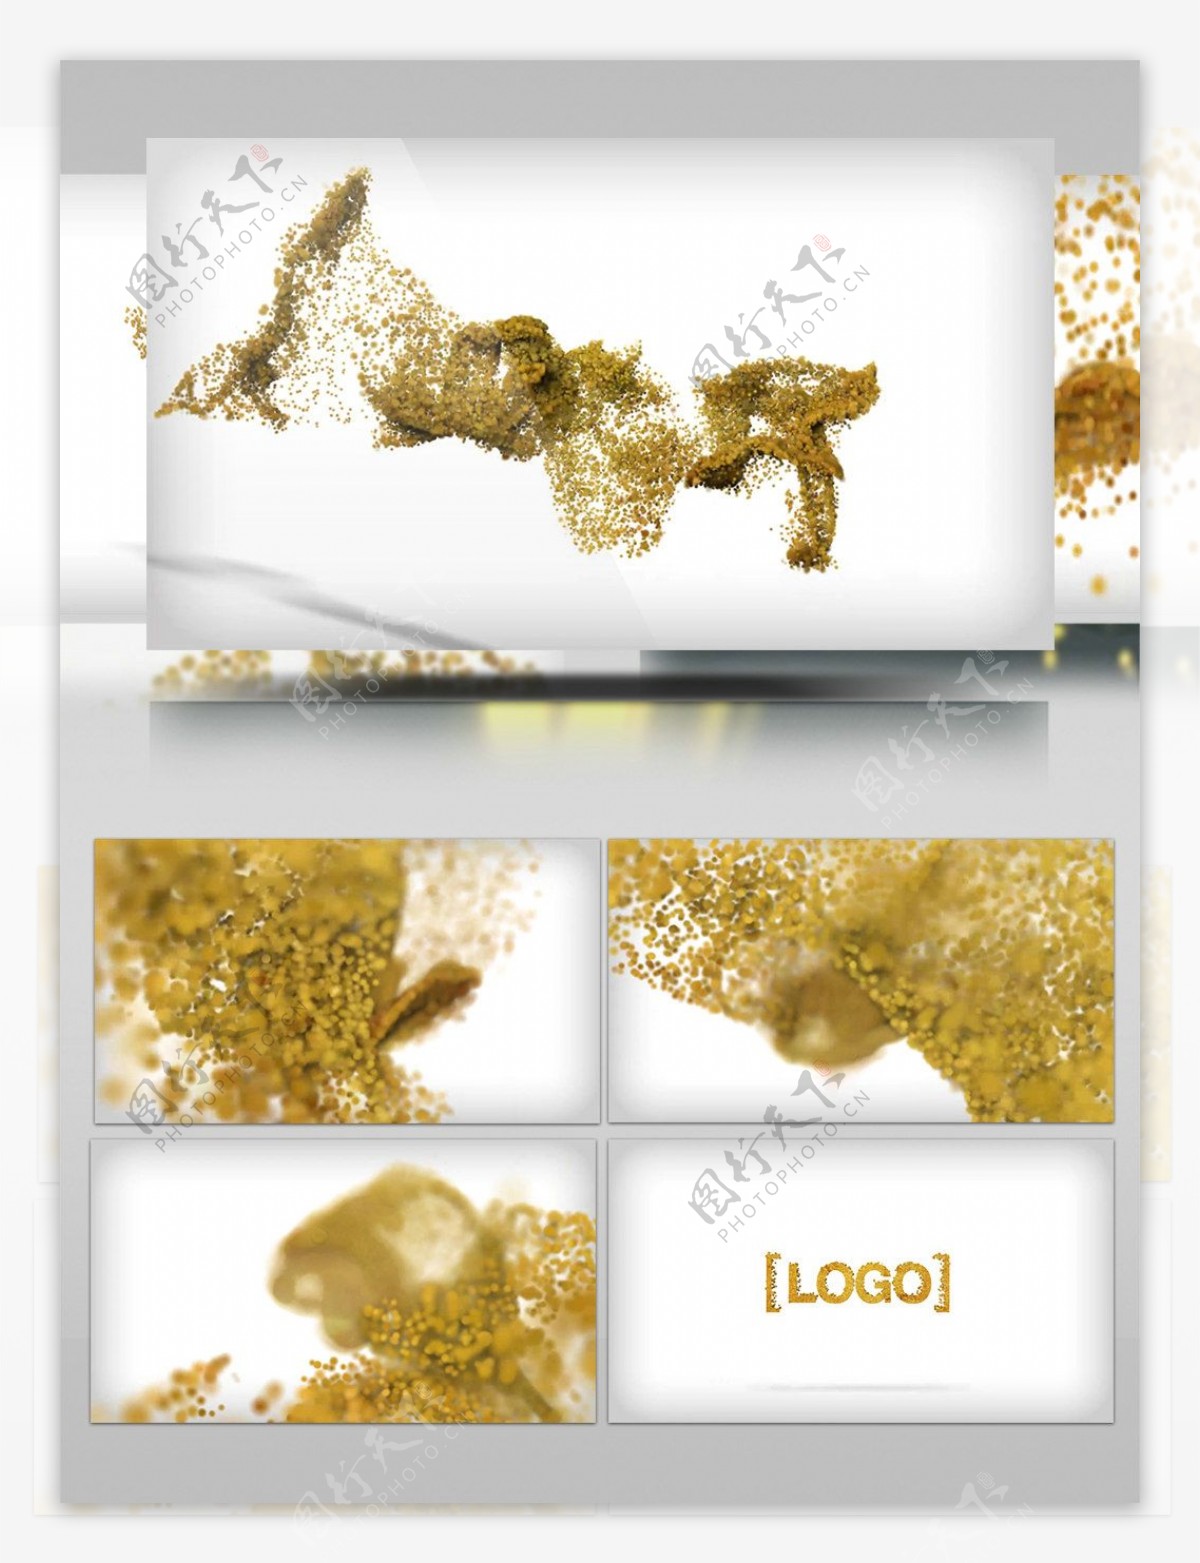 年终总结开场金色花瓣粒子汇聚logo演绎